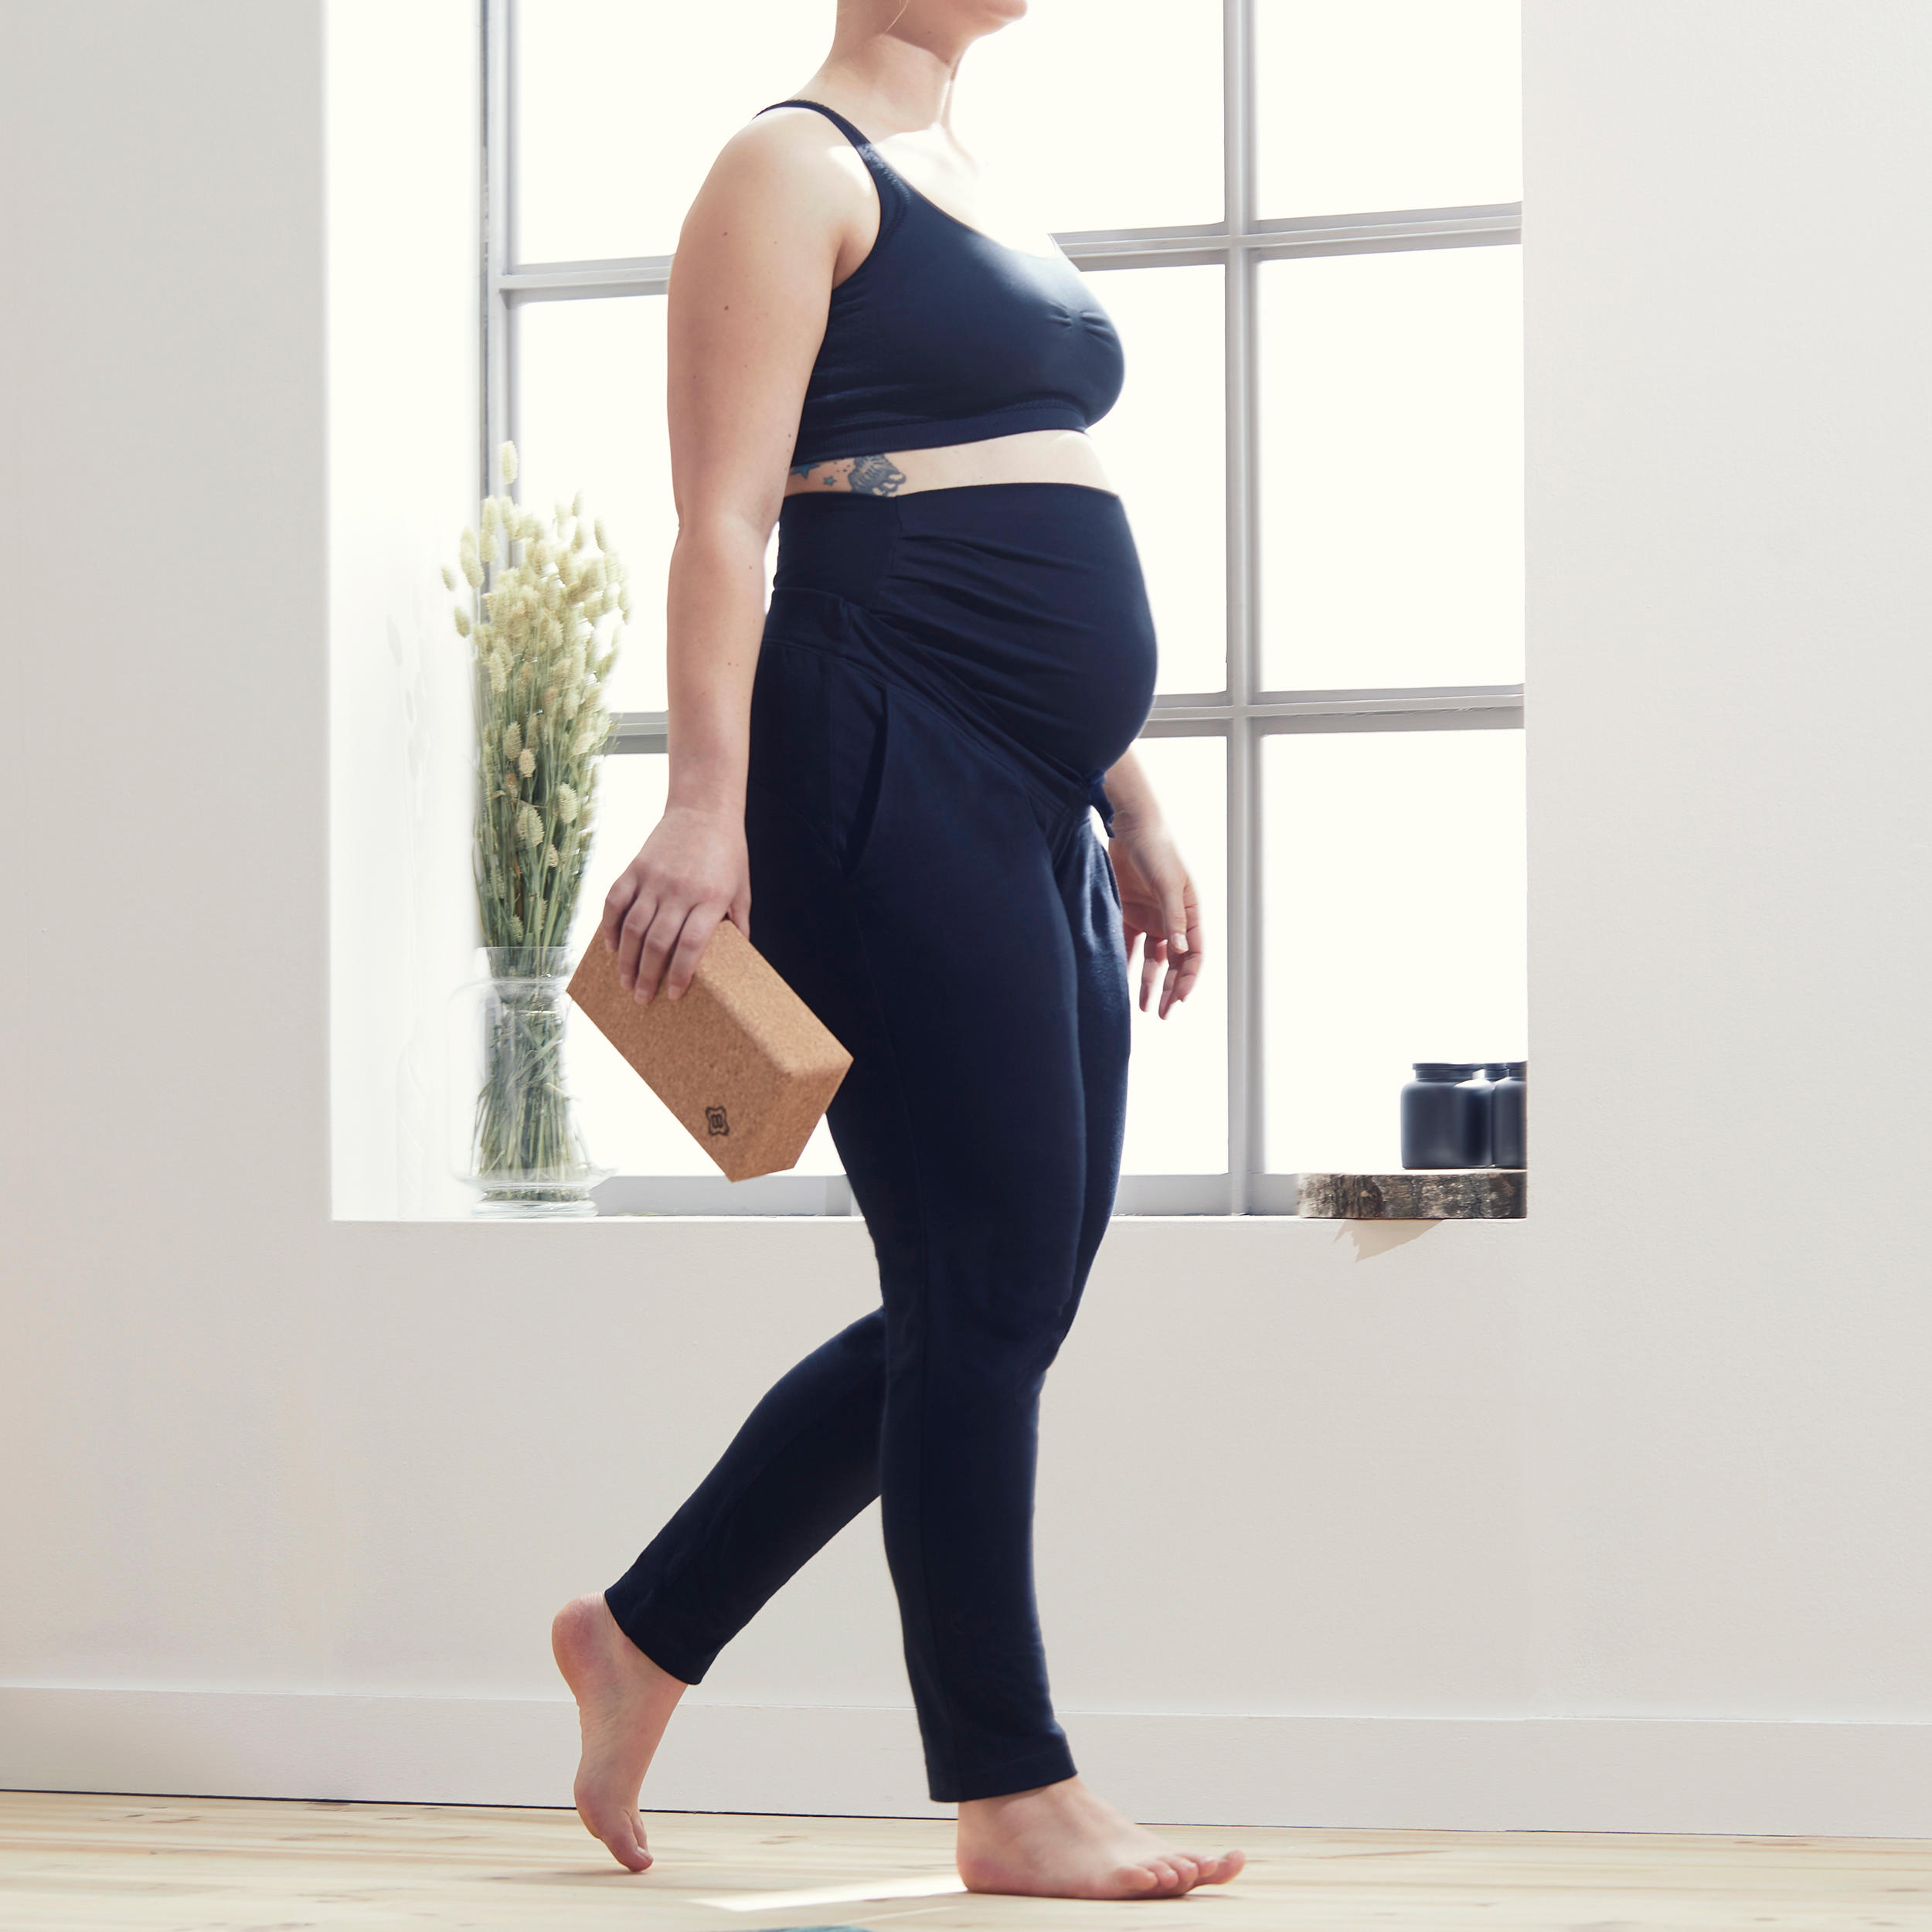 AFITNE Maternity Leggings Over The Belly for Women Pregnancy Yoga